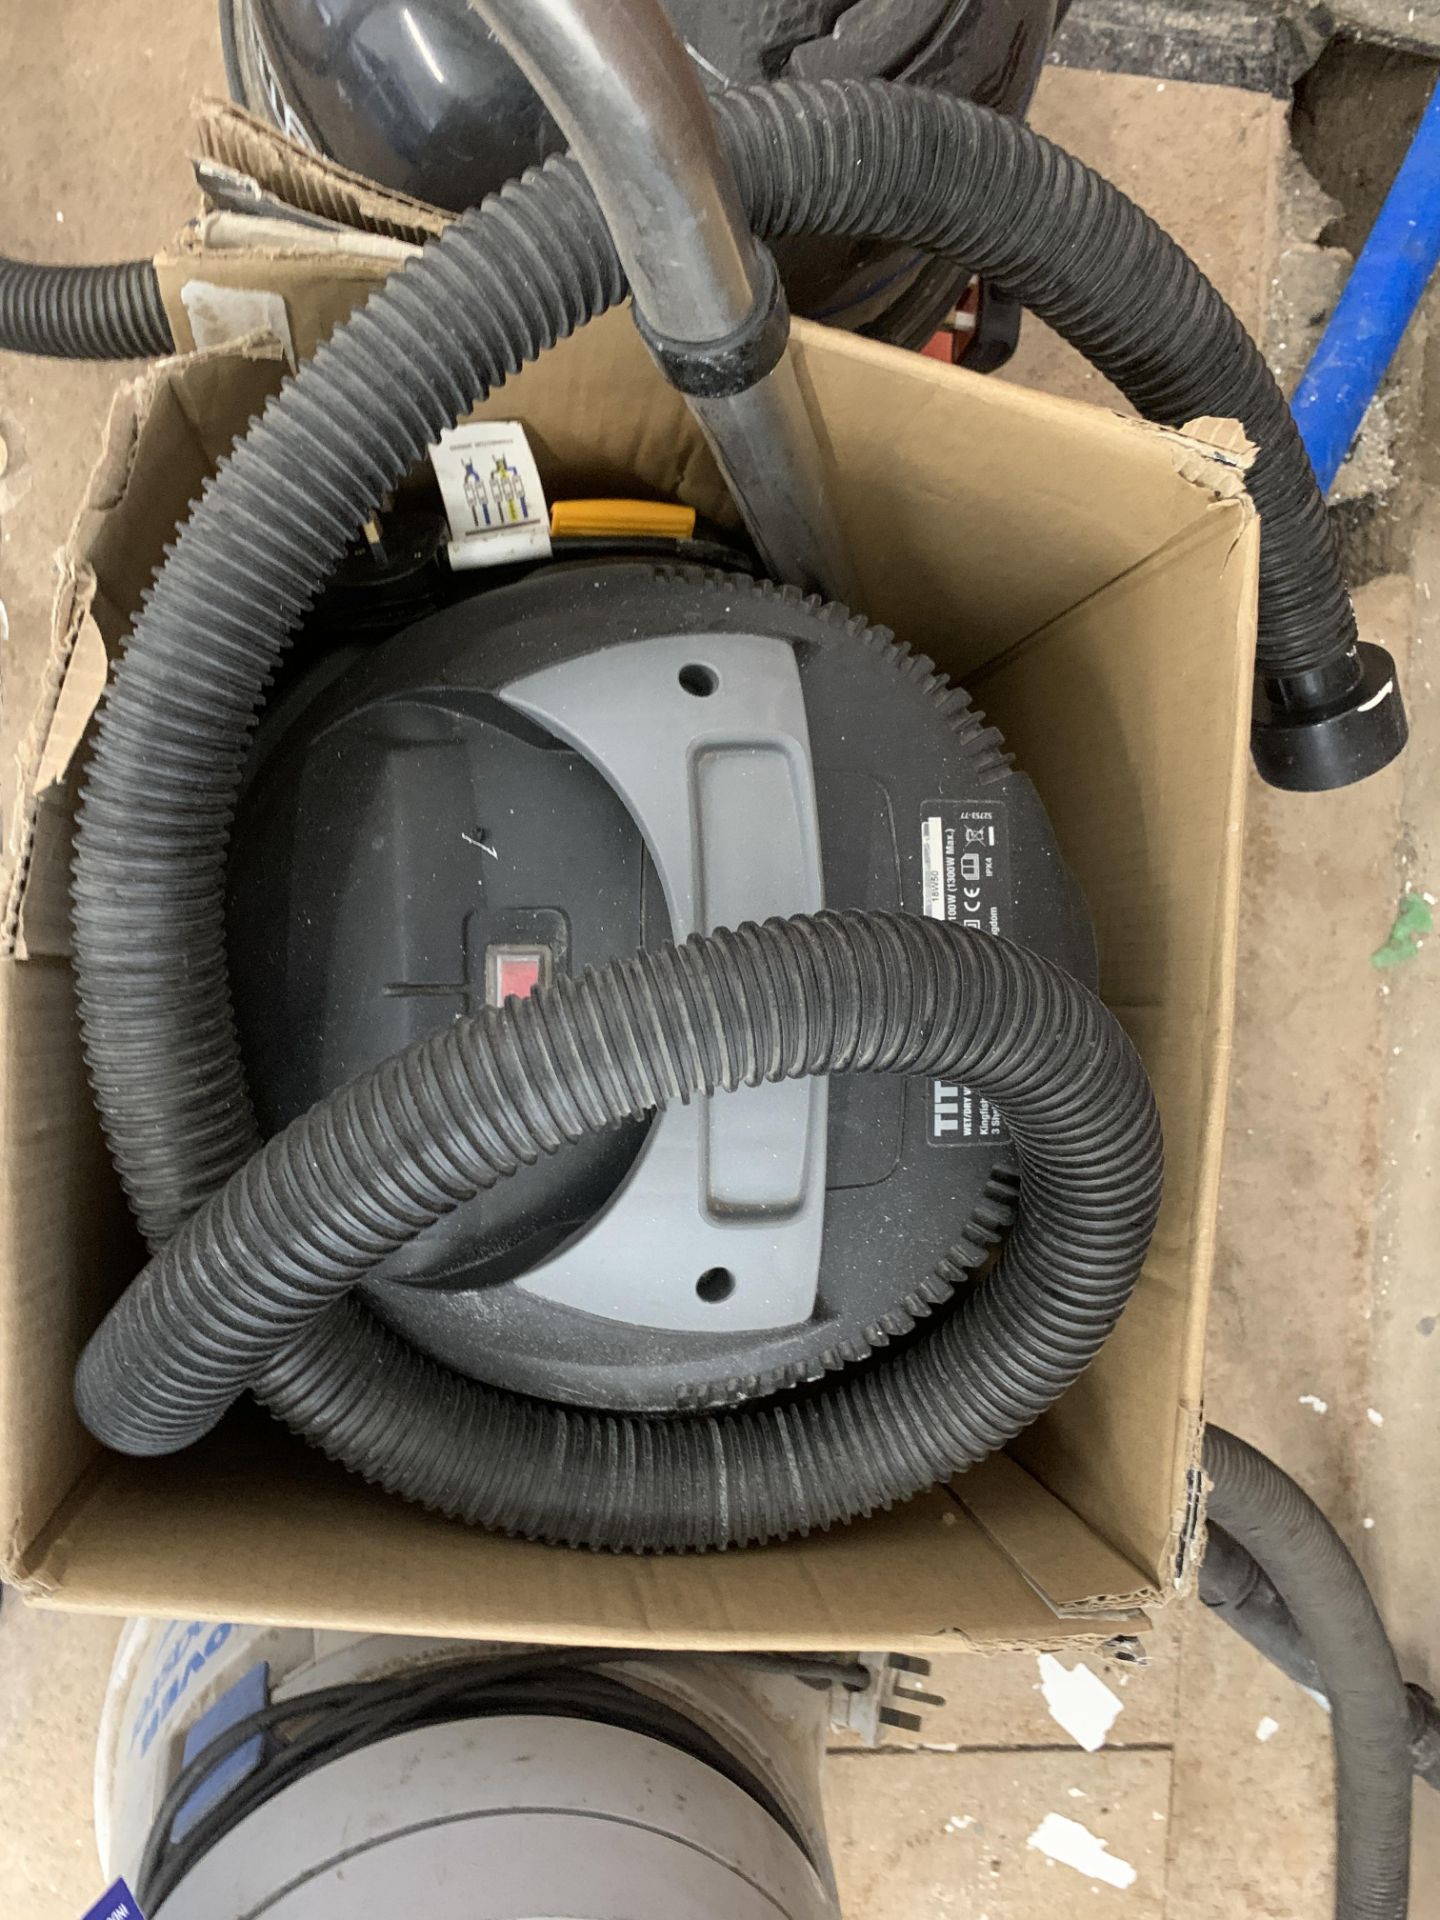 3x assorted 240v Vacuum Cleaners - Bild 3 aus 4